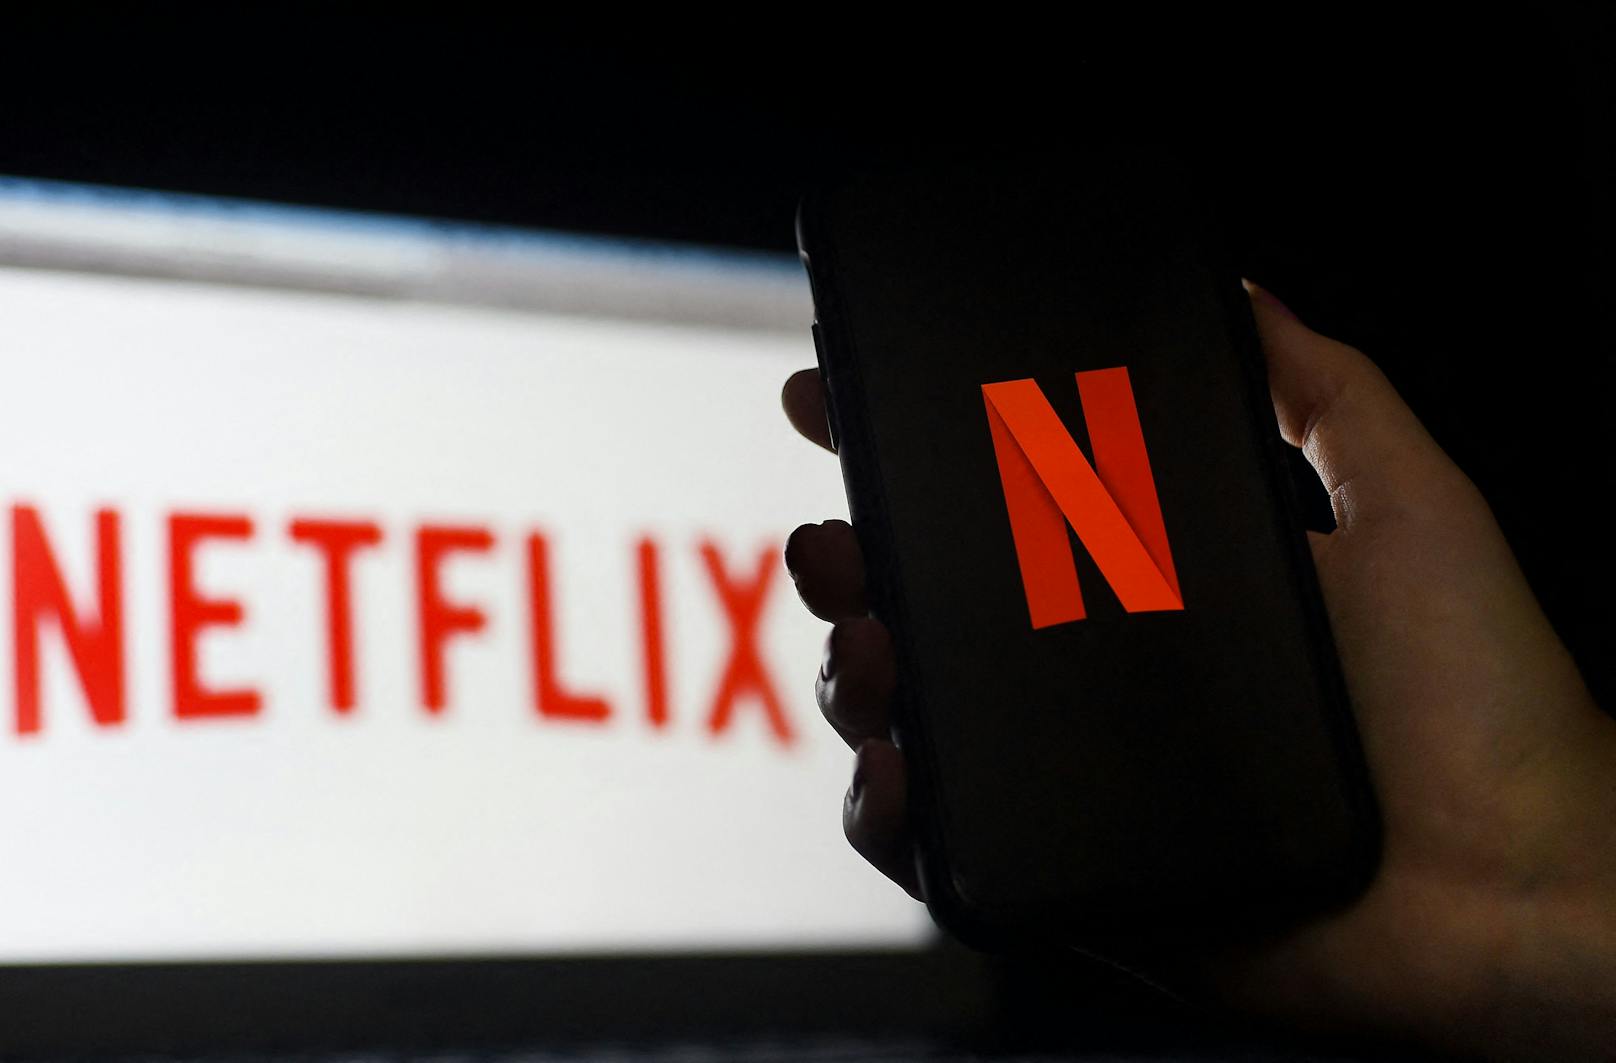 Eine massive Störung bei Netflix sorgte am Mittwoch für Ärger unter den Kunden. Symbolbild